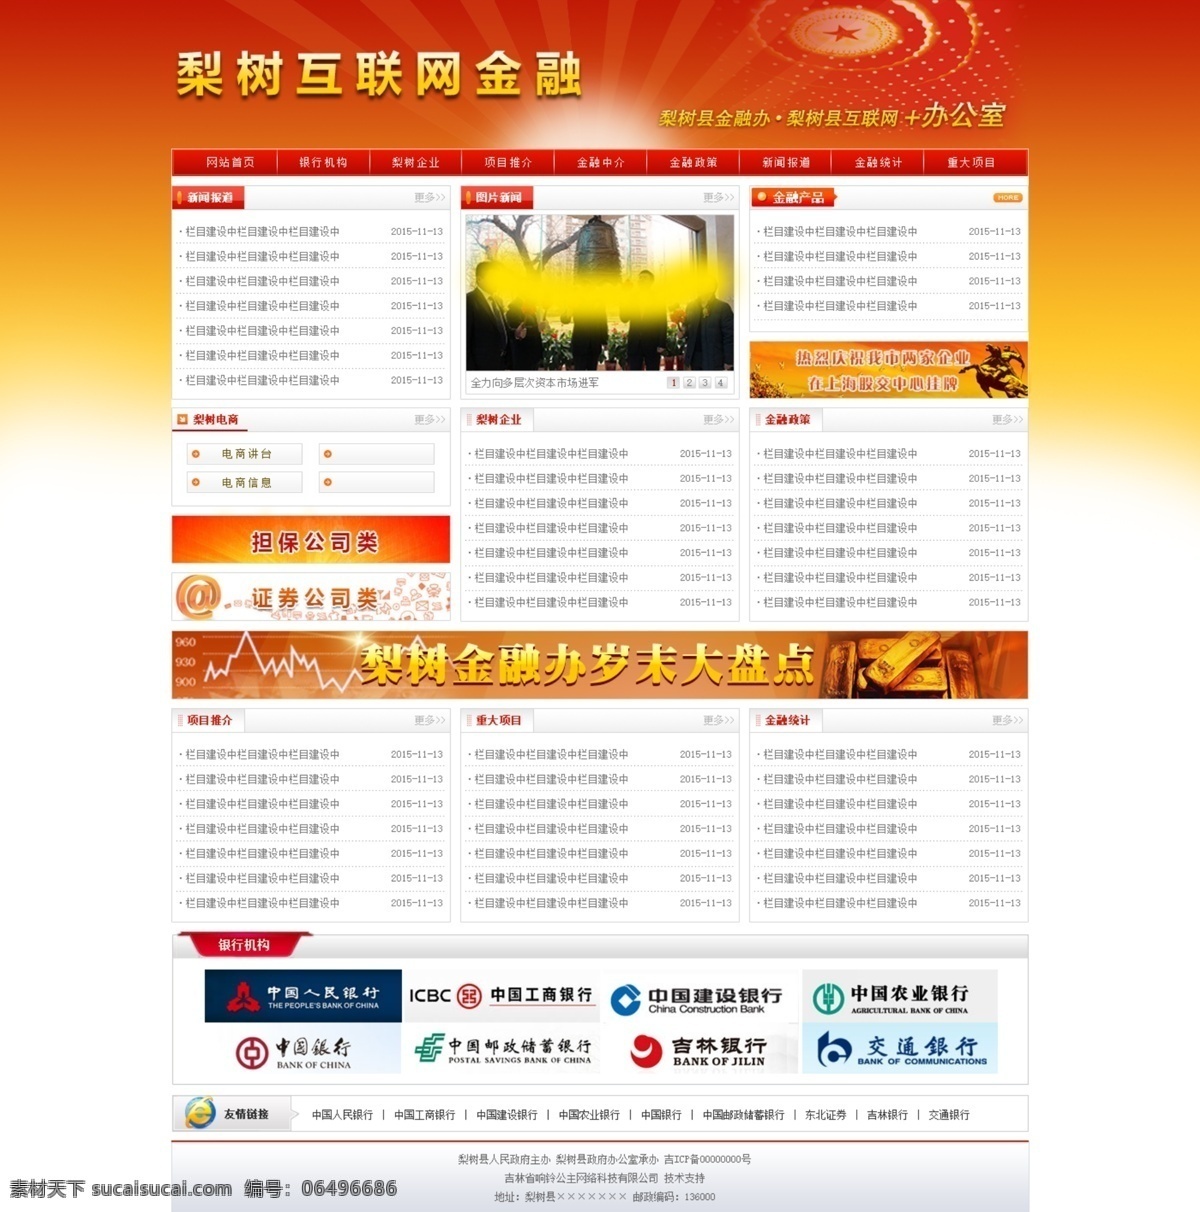 政府网站模板 网站psd 红色网站 红色网站模板 大气网页 简介网页模板 web 界面设计 中文模板